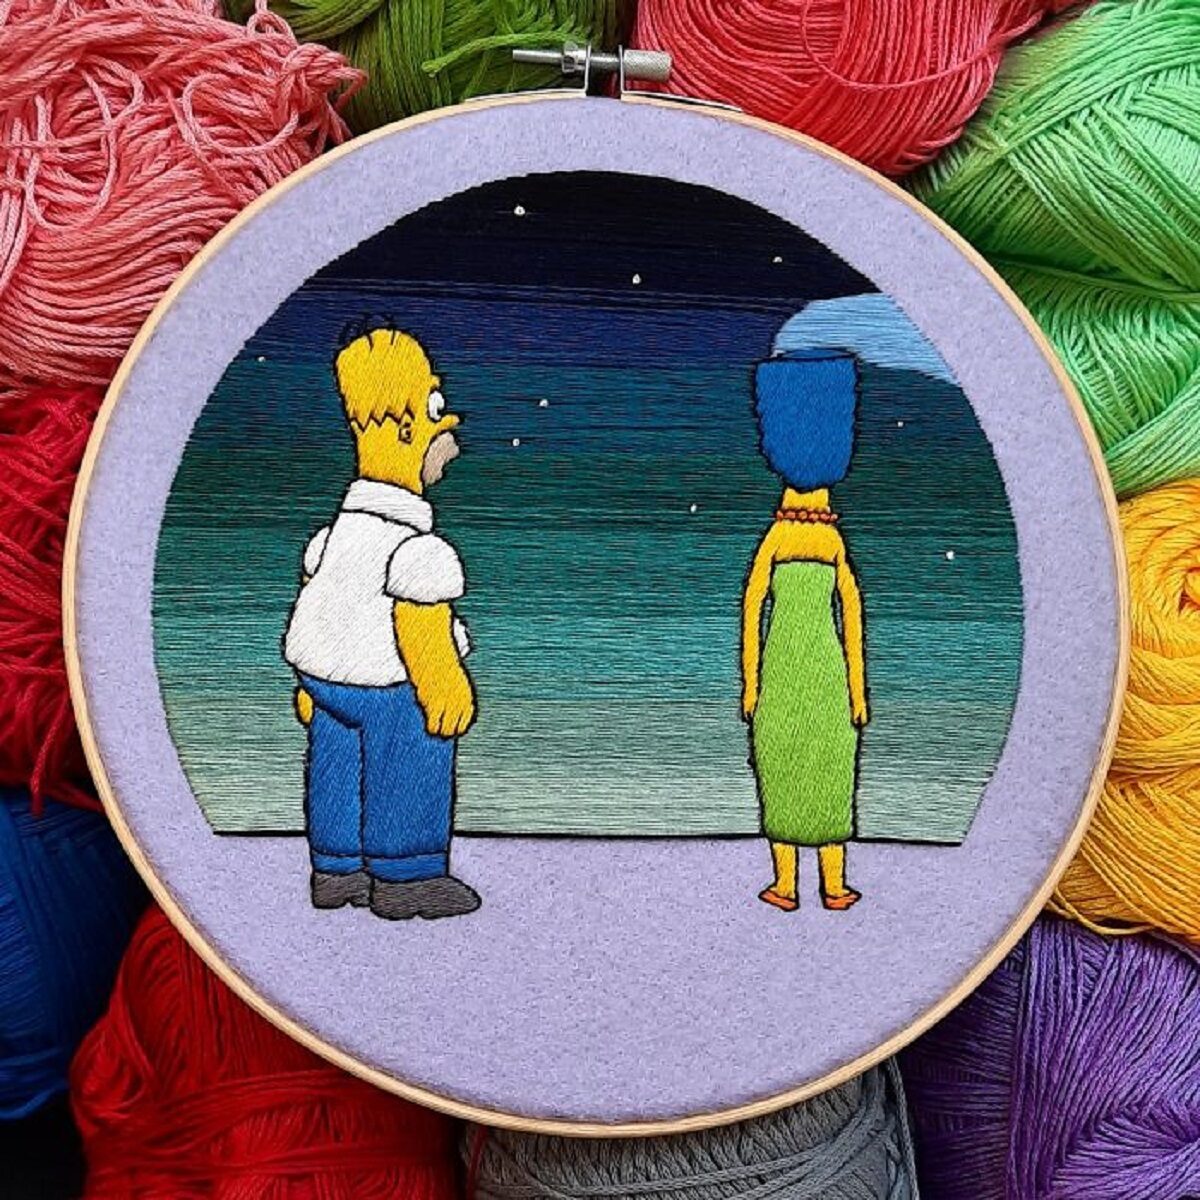 Artista Gabriela Martinez cria bordados de cenas de Os Simpsons 14